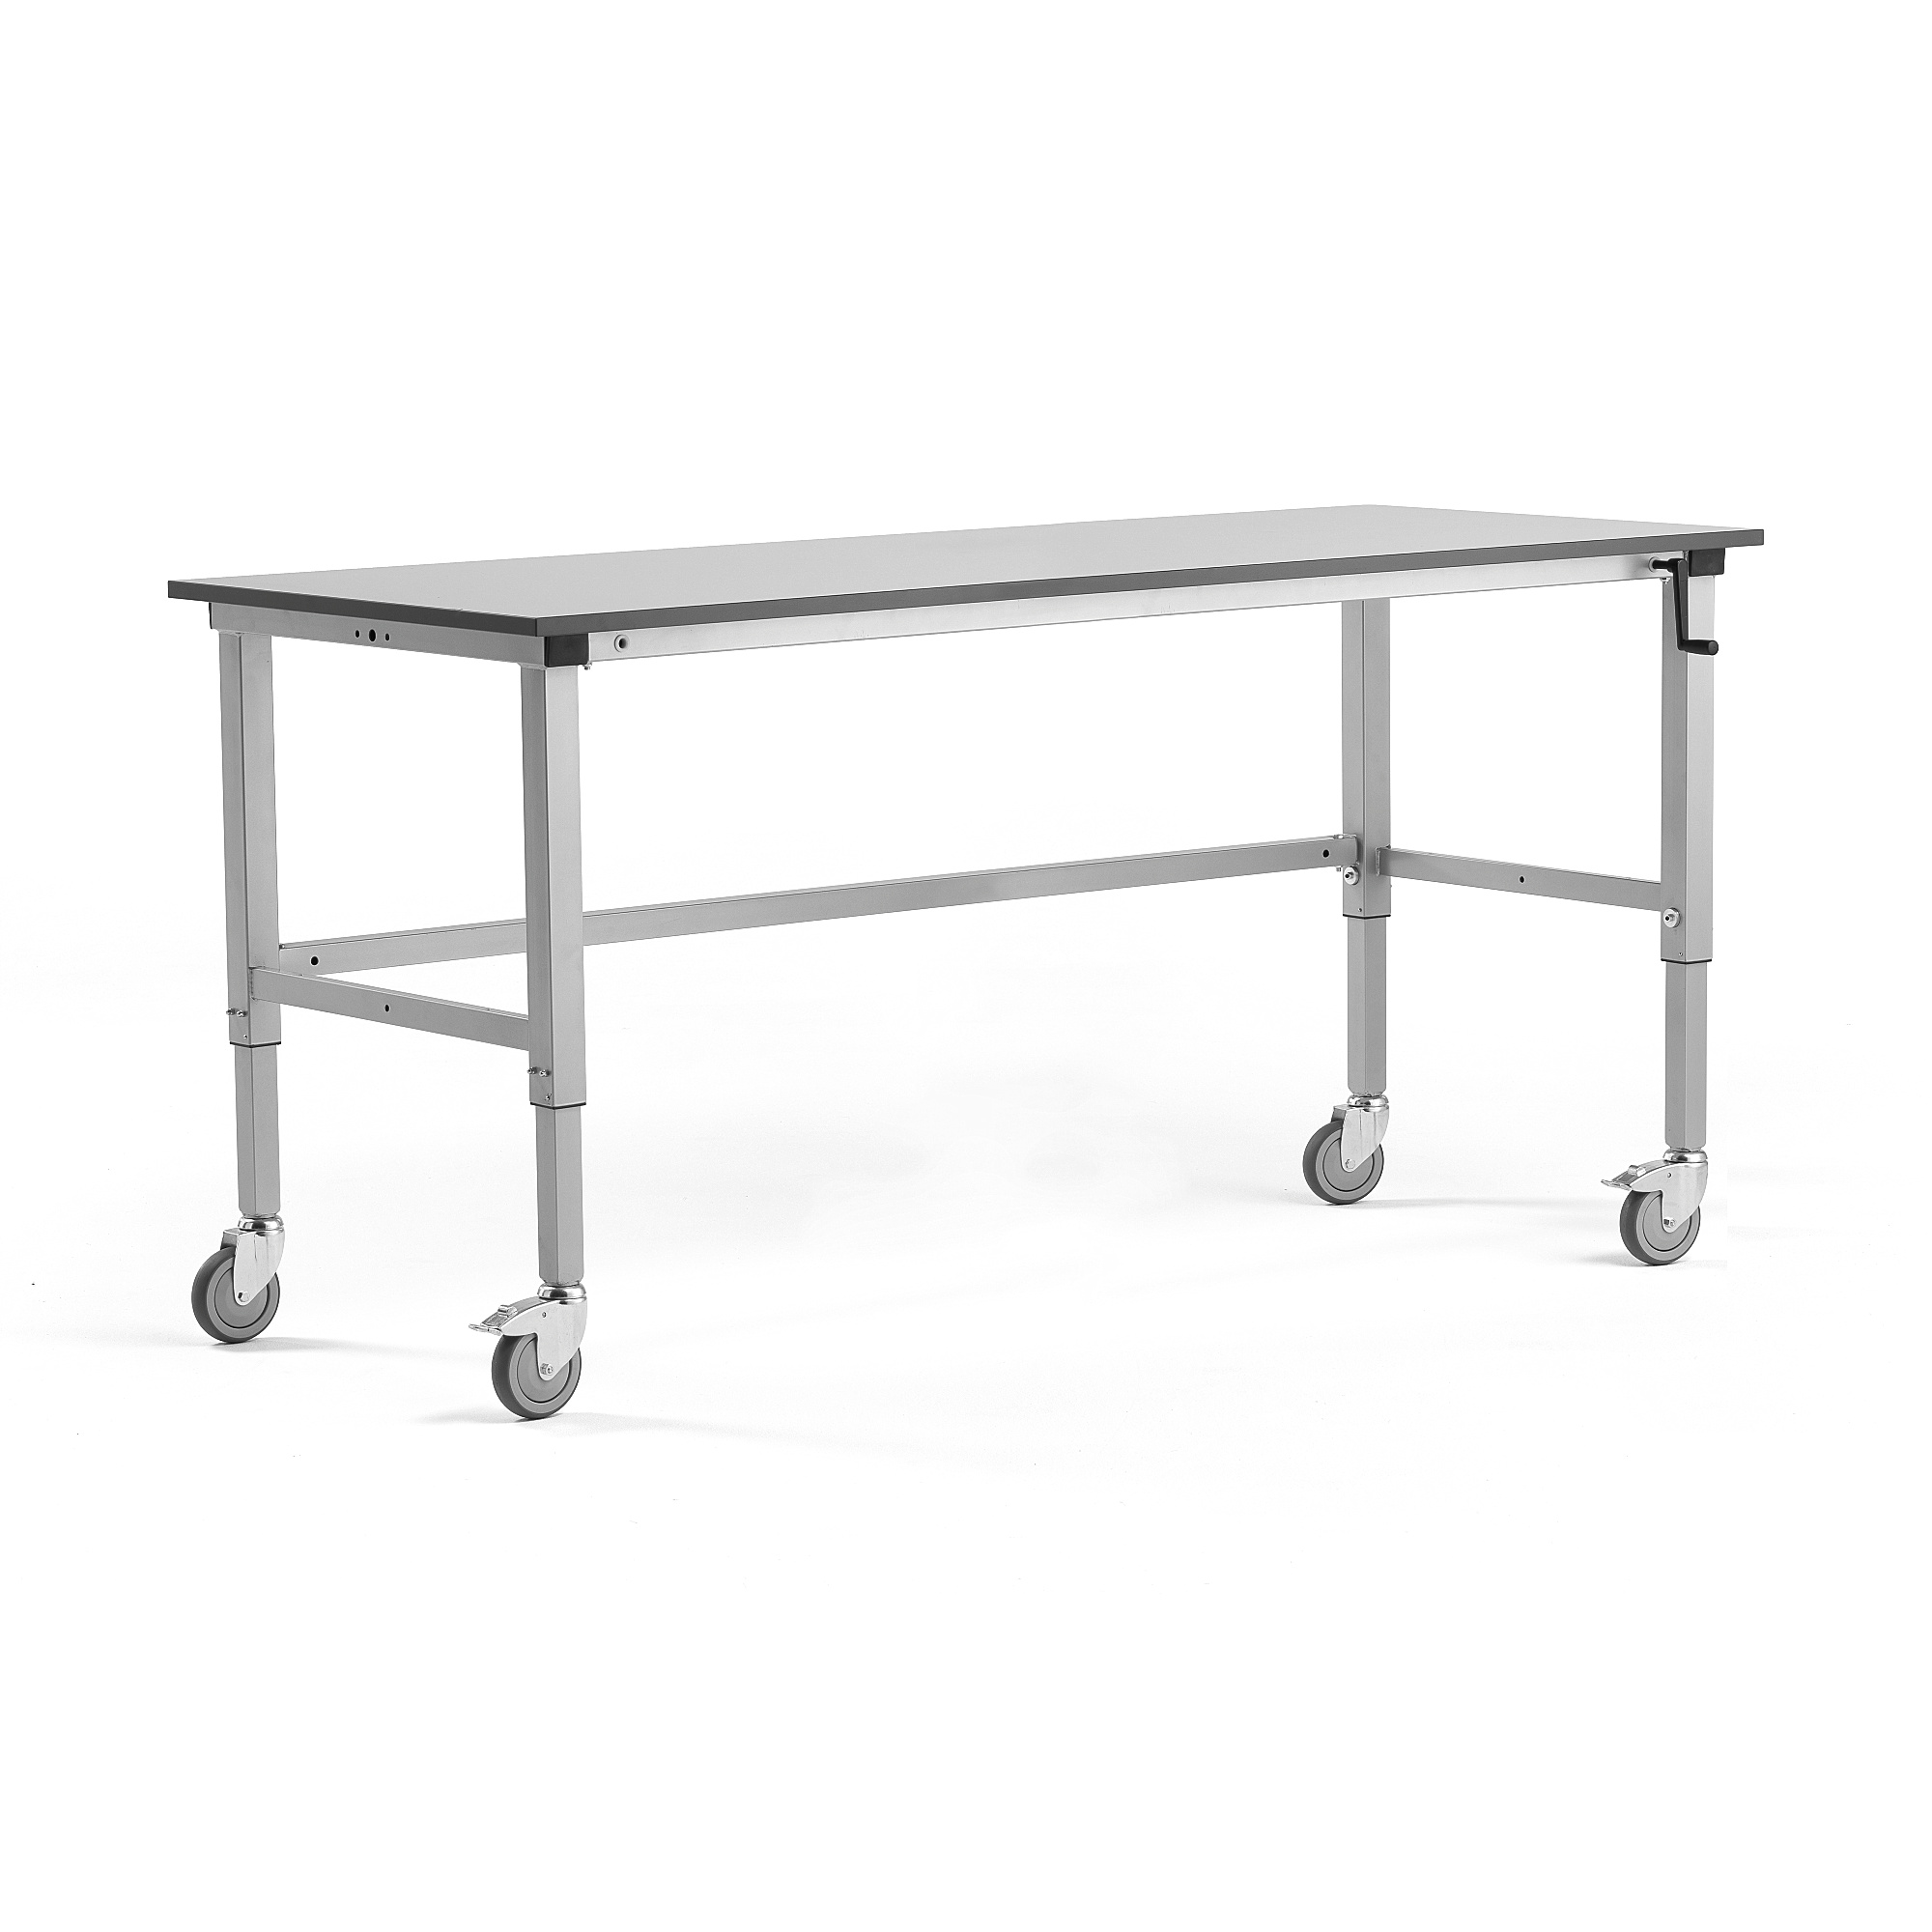 Mobilný dielenský stôl MOTION, manuálne nastaviteľný, 2000x800 mm, šedý